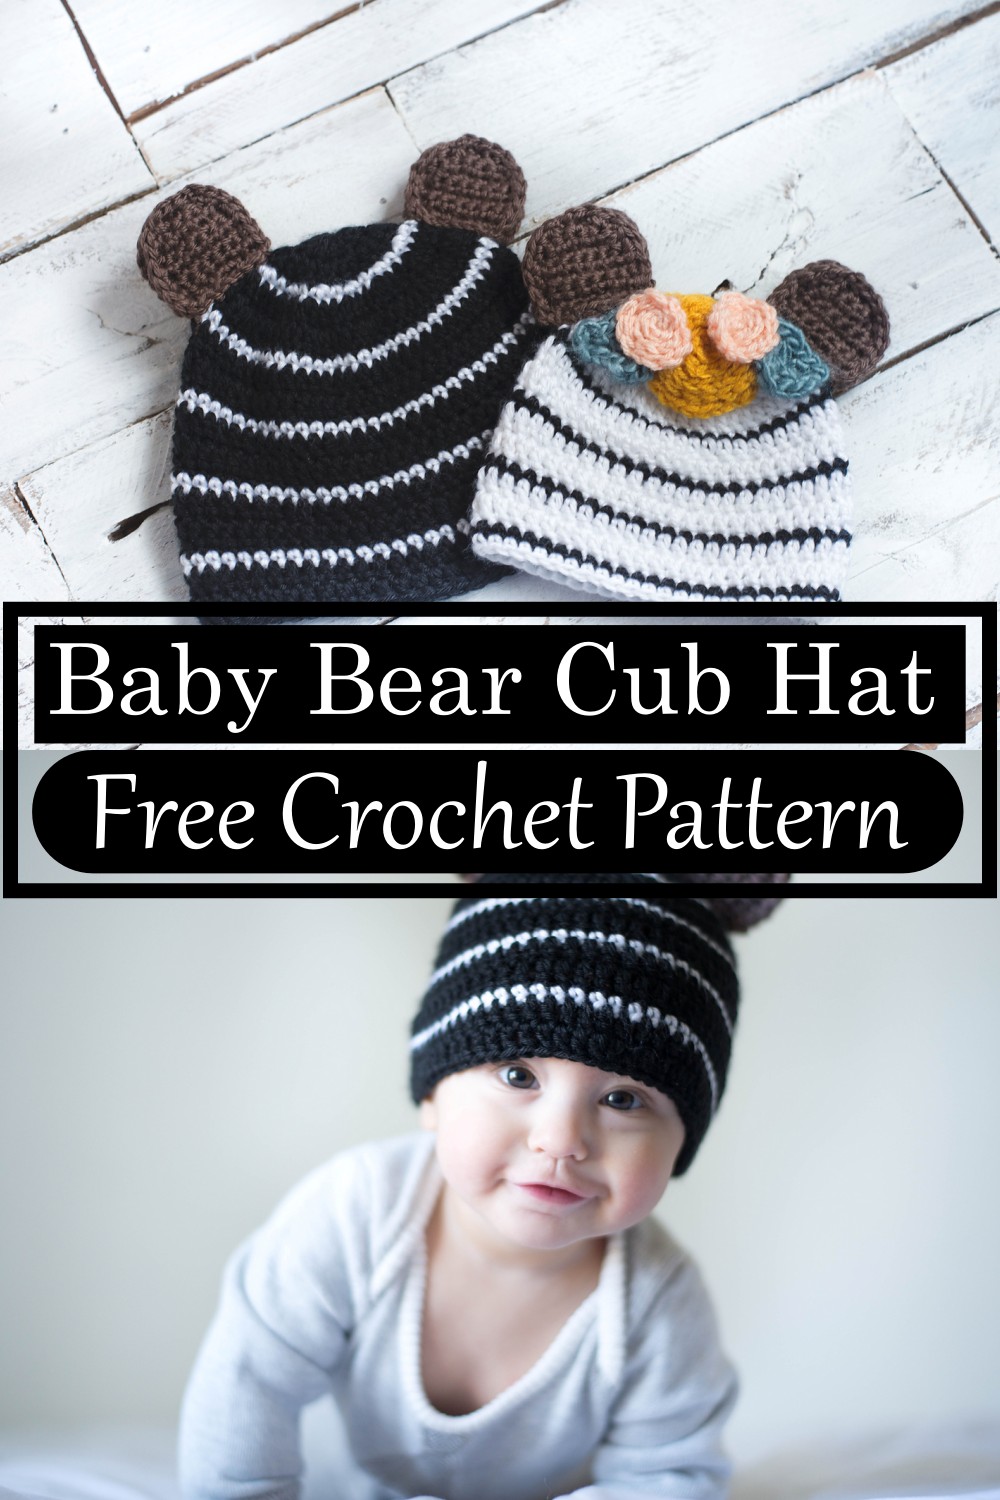 Baby Bear Cub Hat